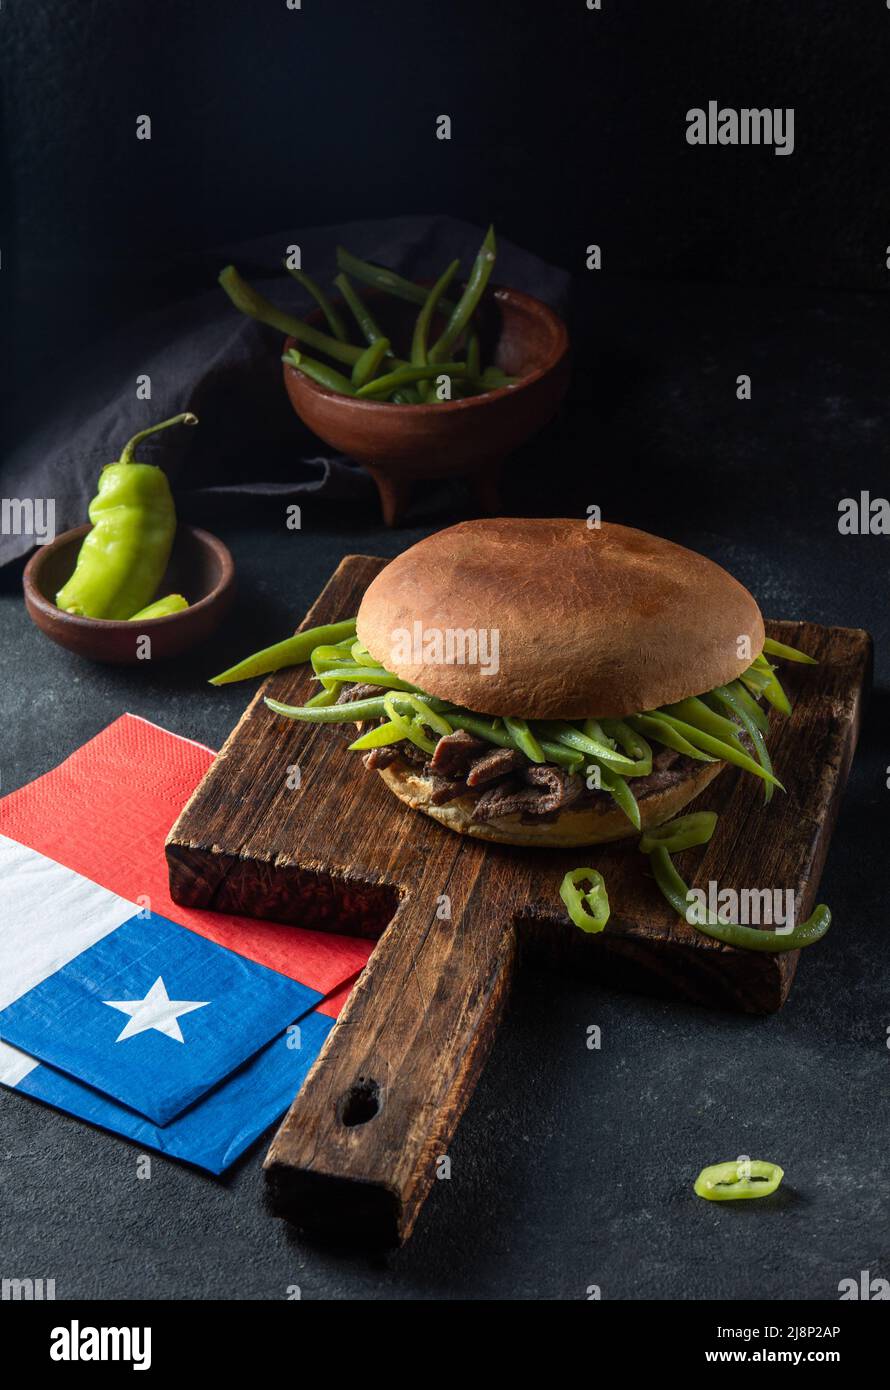 Hamburger chilien latino-américain Chacarero avec tranches de bœuf de qualité supérieure et haricots verts sur fond noir. Banque D'Images